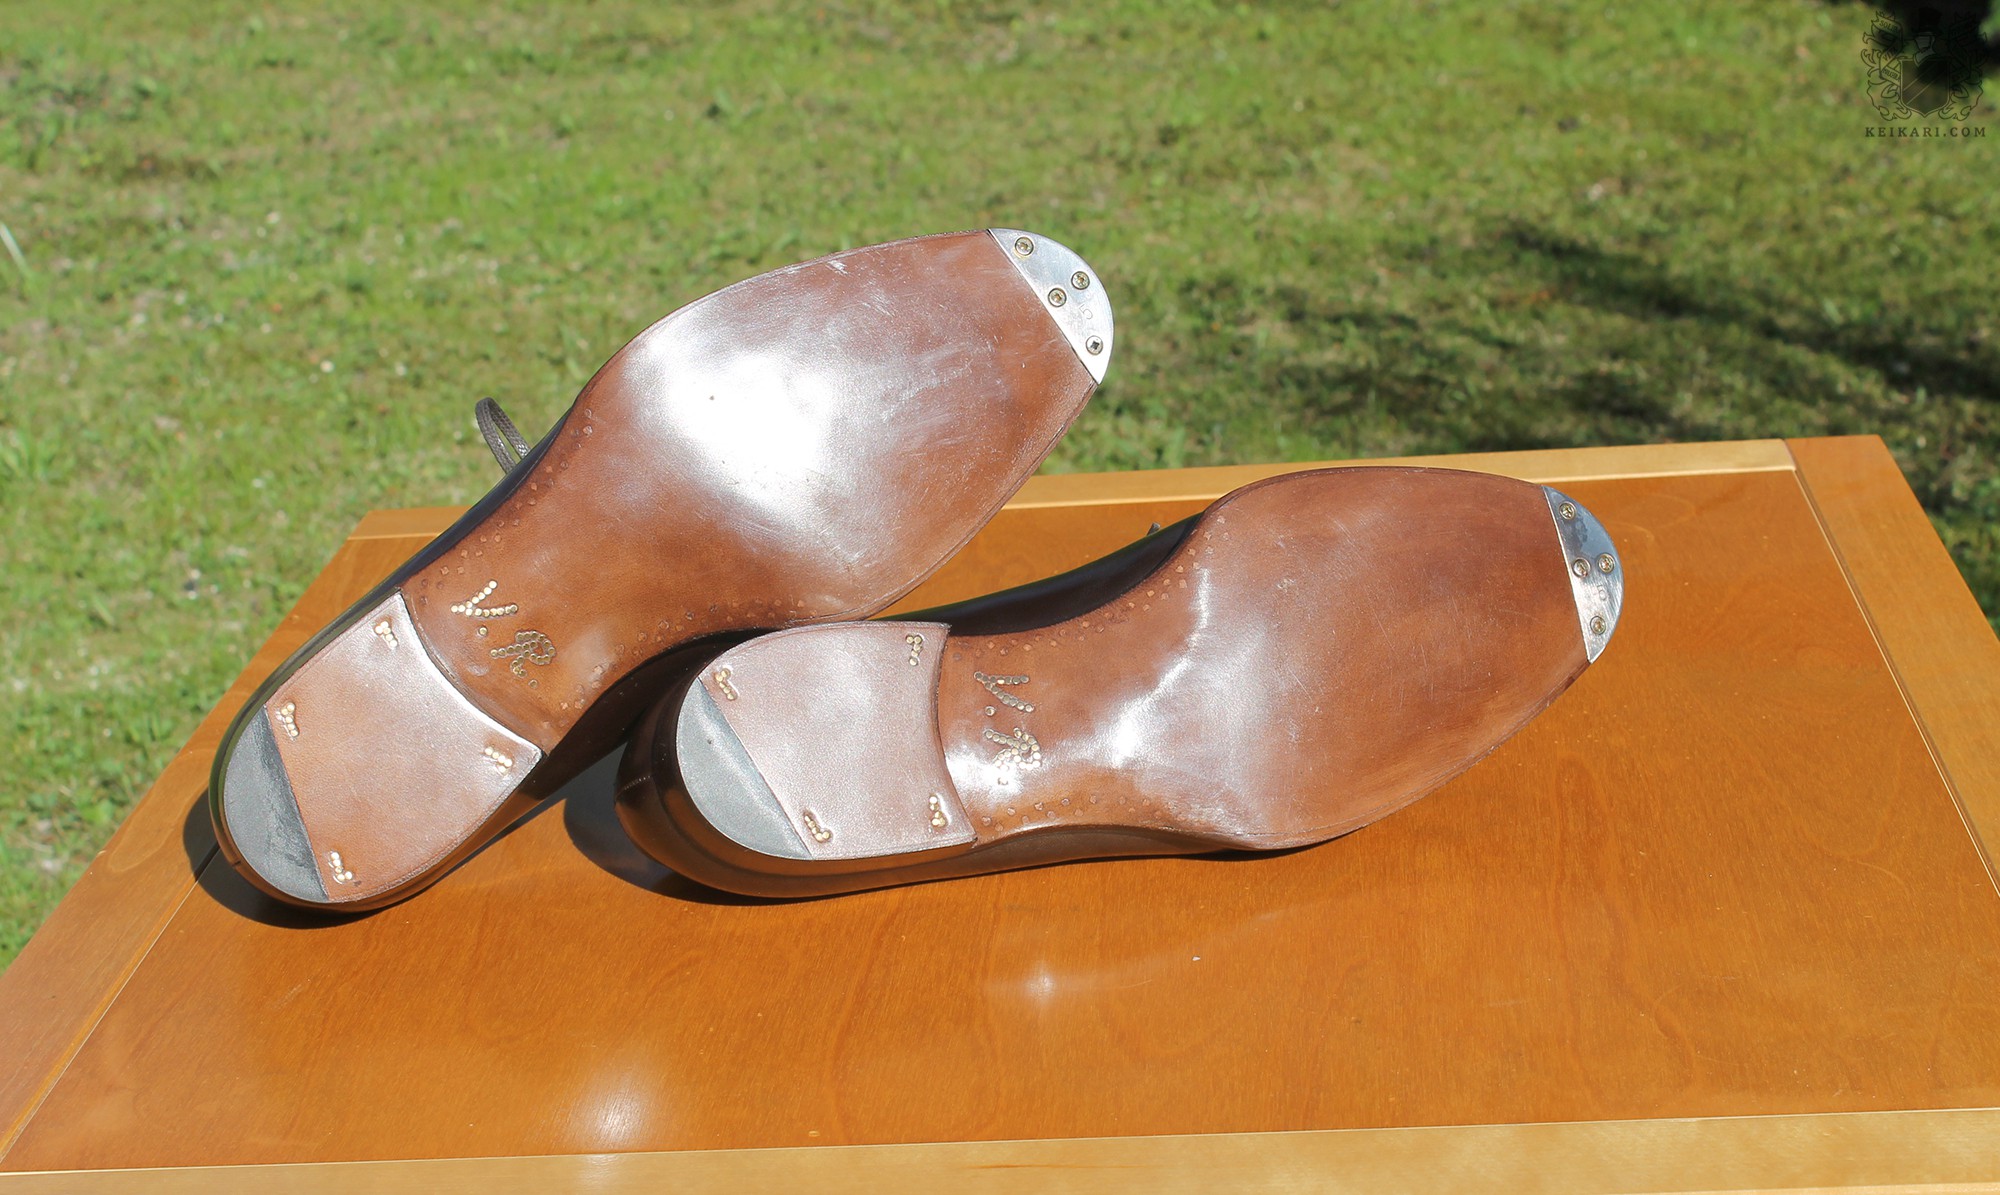 Anatomy_of_Saint_Crispin's_shoes_at_Keikari_dot_com14